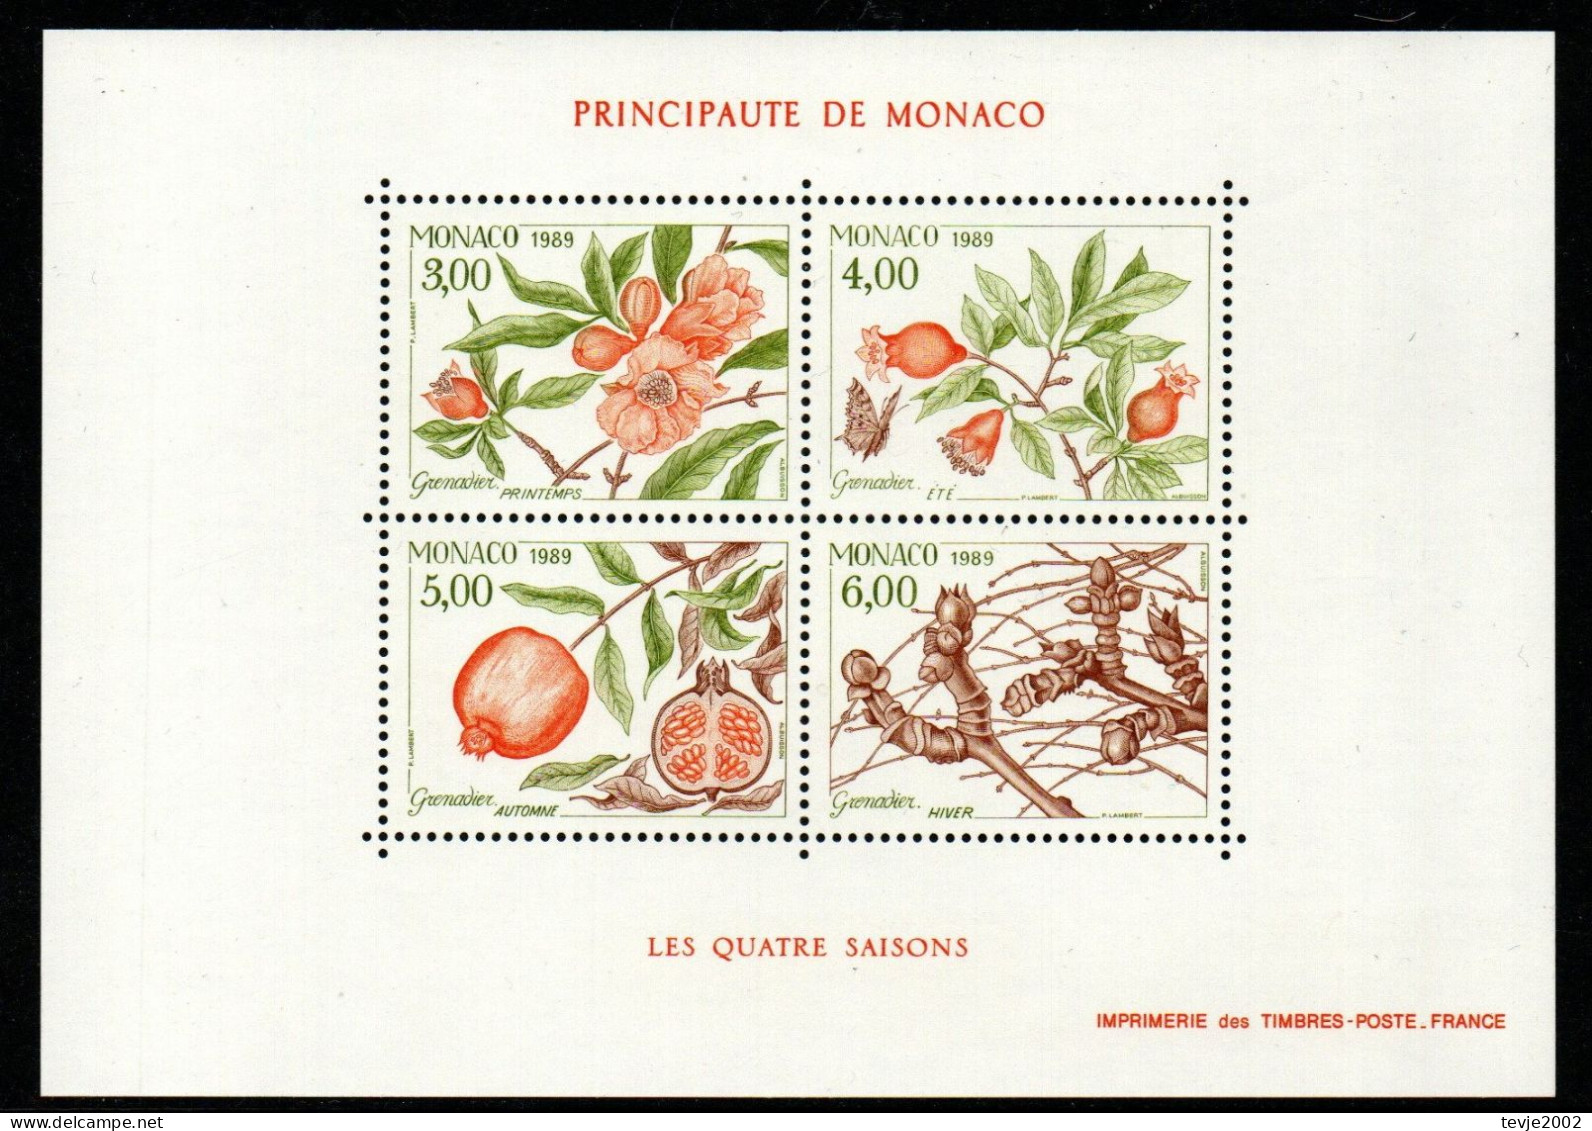 Monaco 1989 - Mi.Nr. Block 42 - Postfrisch MNH - Bäume Trees Granatapfel Früchte Obst Fruits - Bomen